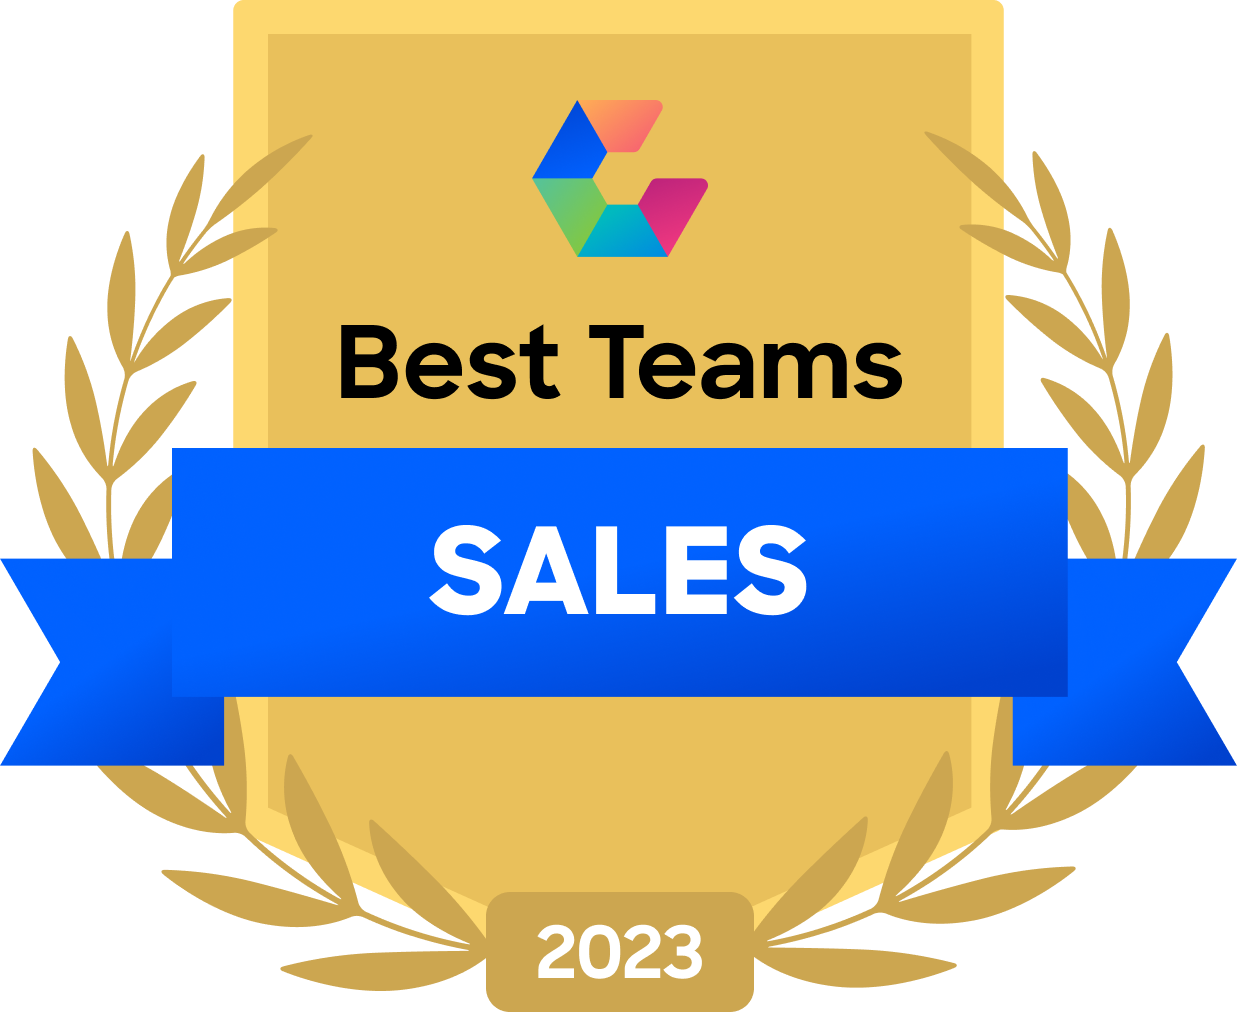 Best Teams Award for Sales 2023 Smartsheet